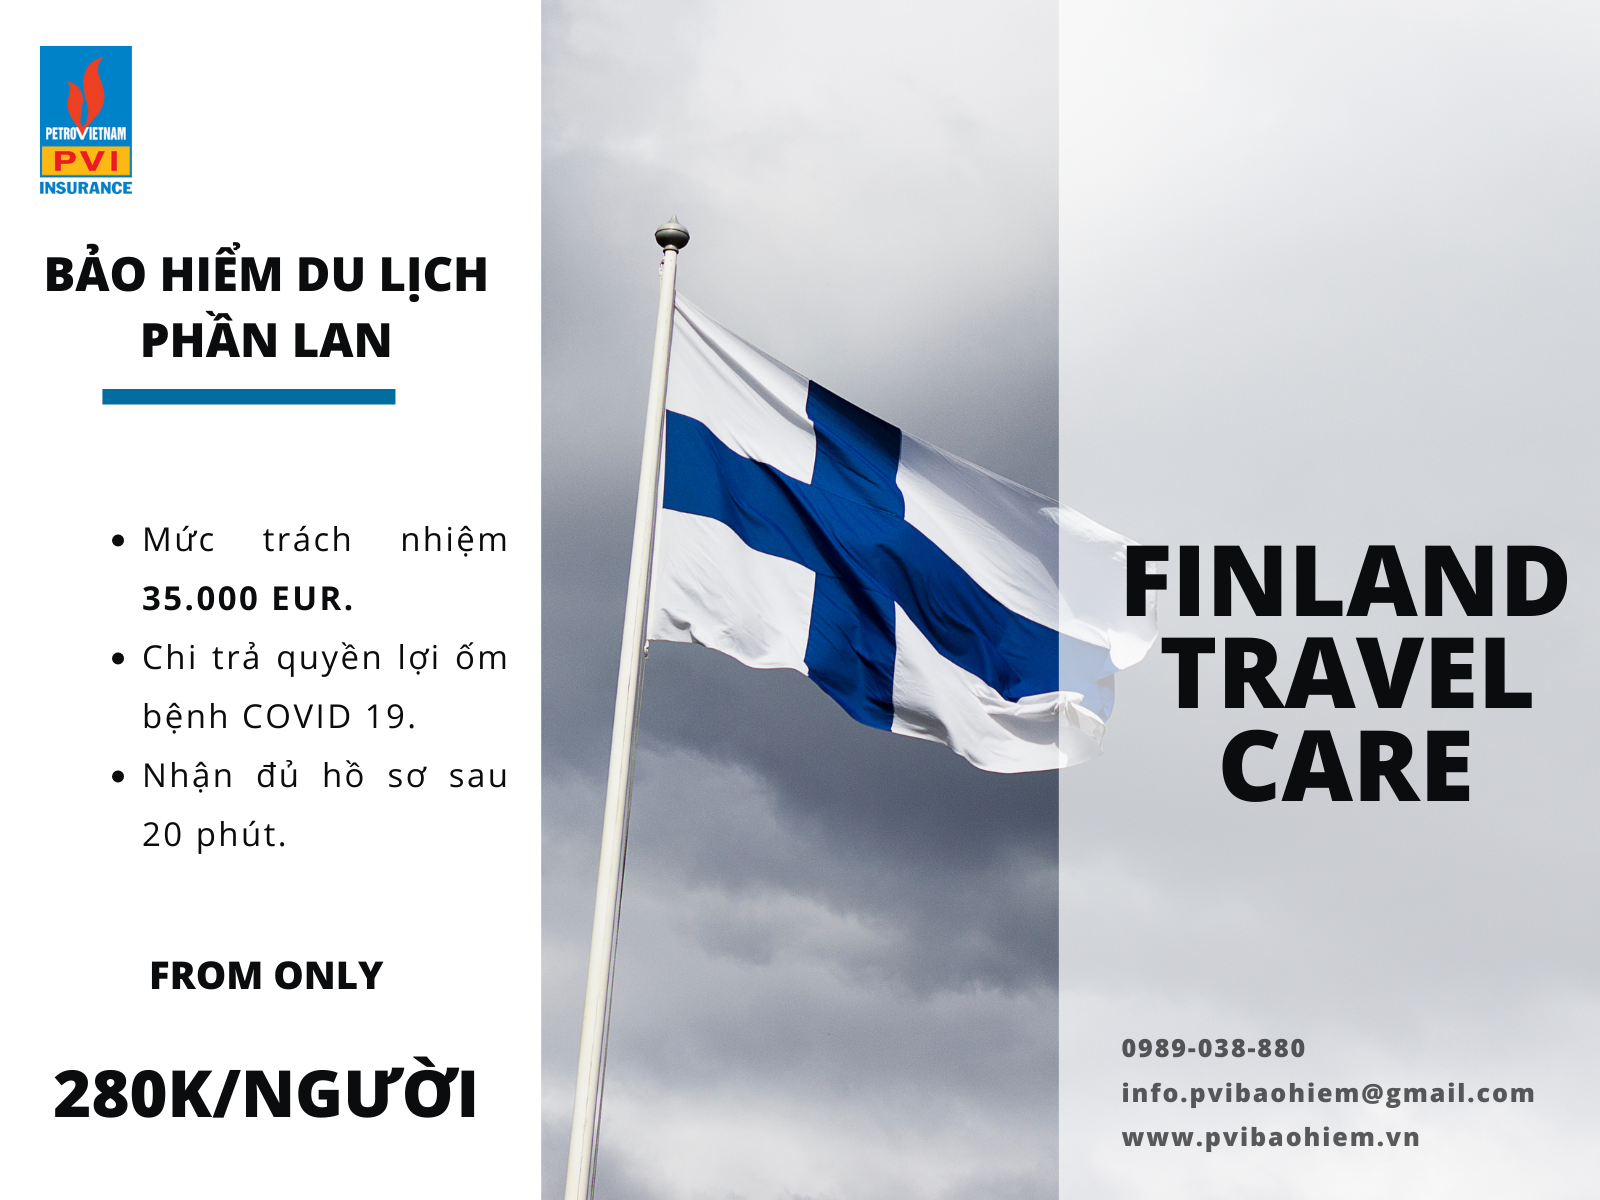 Bảo hiểm du lịch Phần Lan có chi trả quyền lợi Covid 19